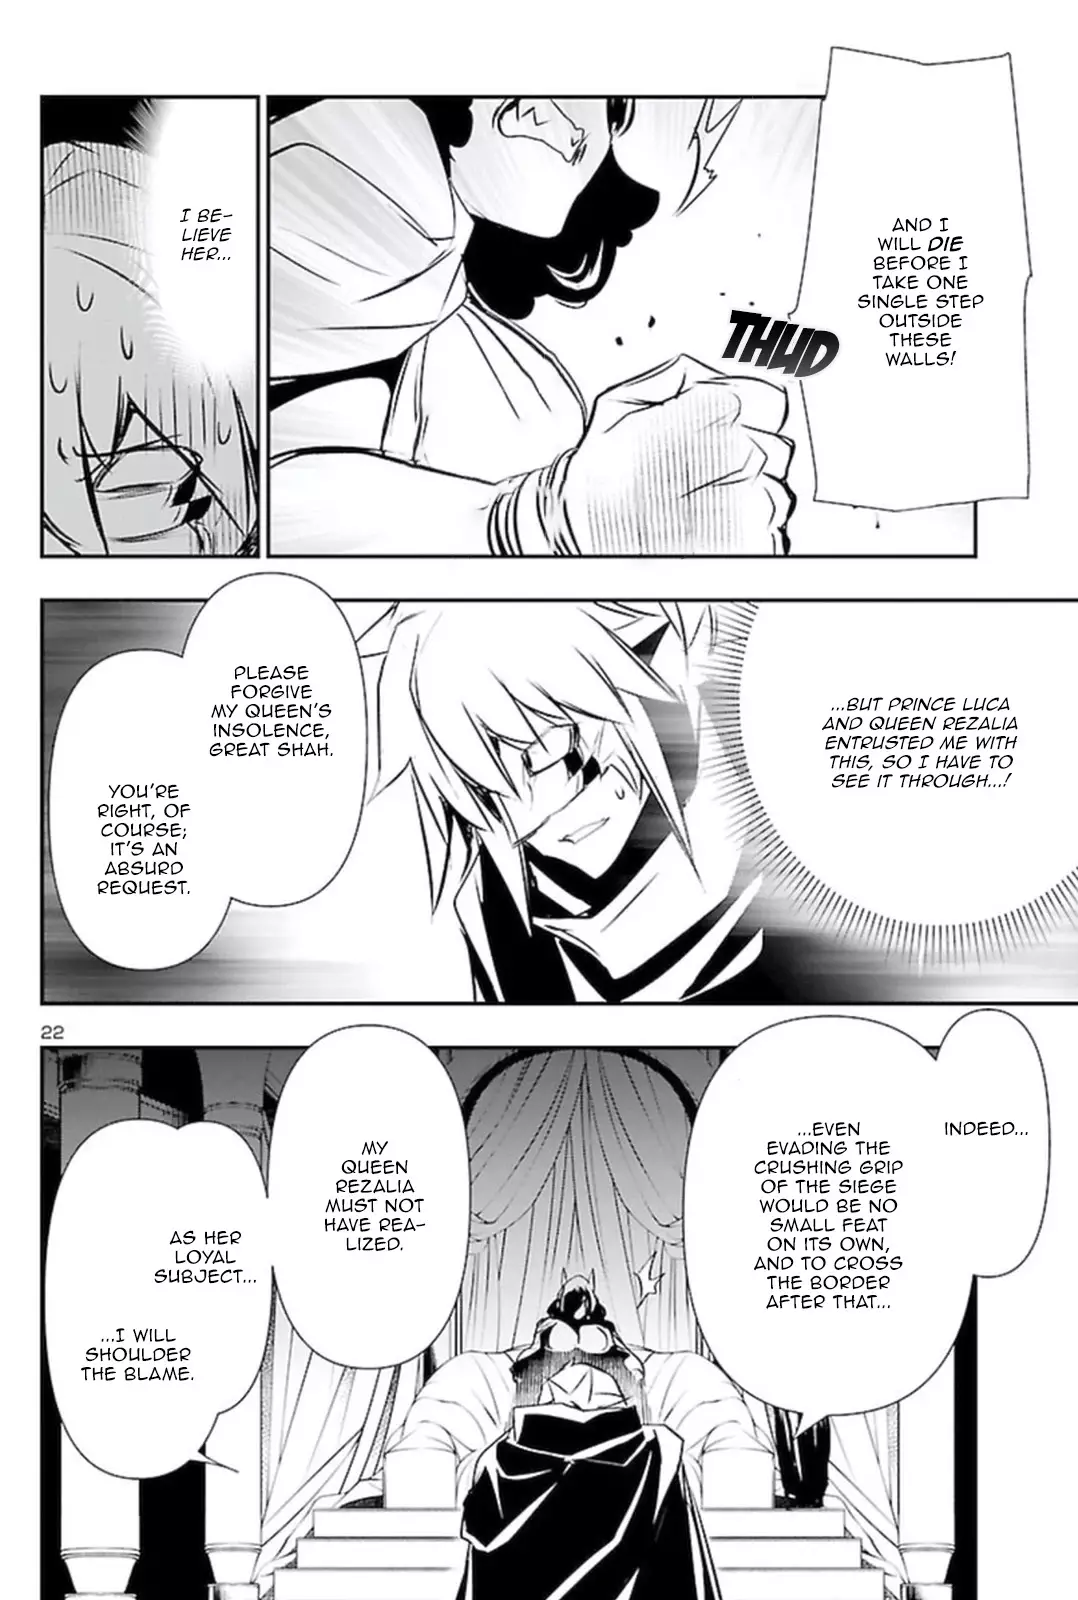 Shinju no Nectar - 59 page 21-7024ad81